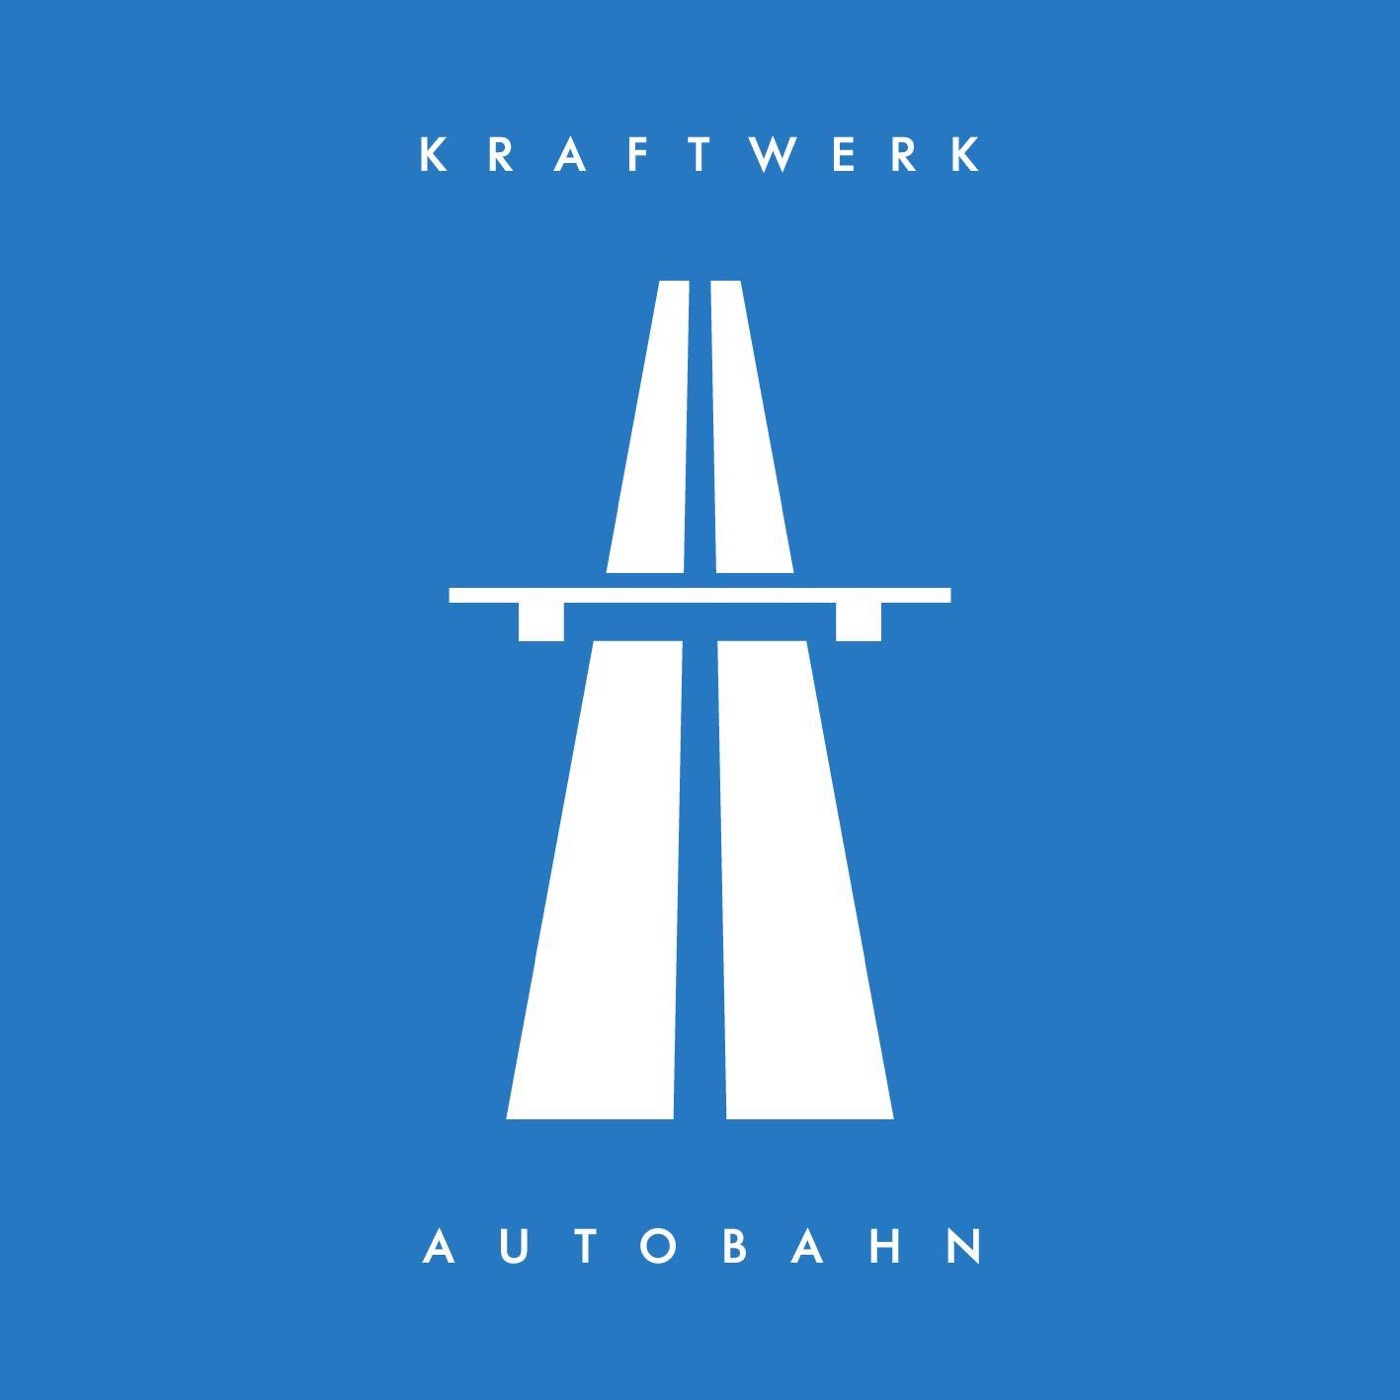 Autobahn (2009 Remaster) by Kraftwerk